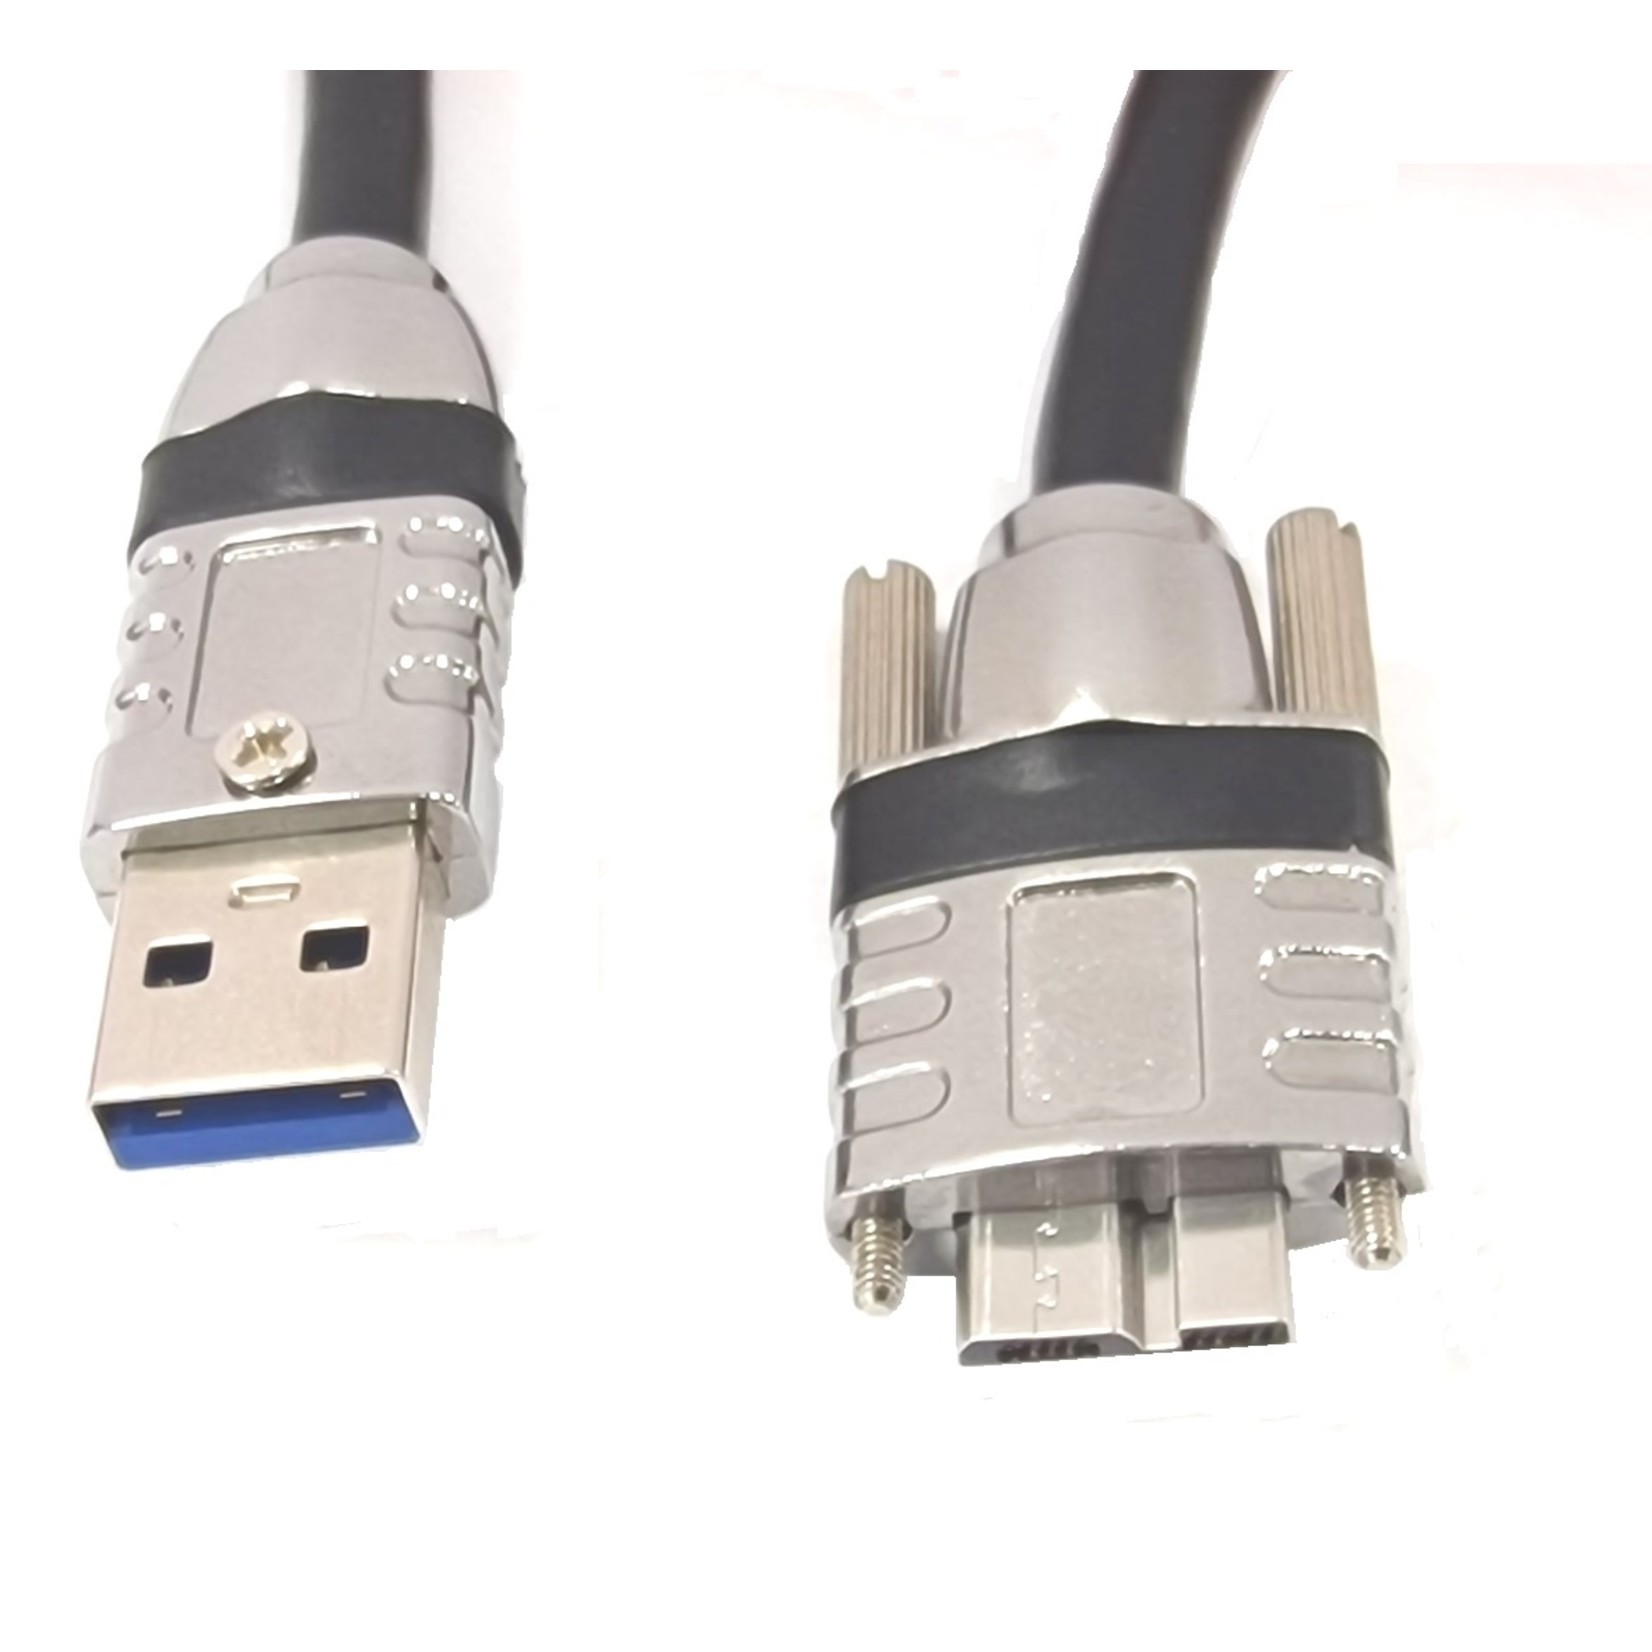 Kabel standardowy USB 3, USB Mico B ze śrubami prosty o długości 5 metrów